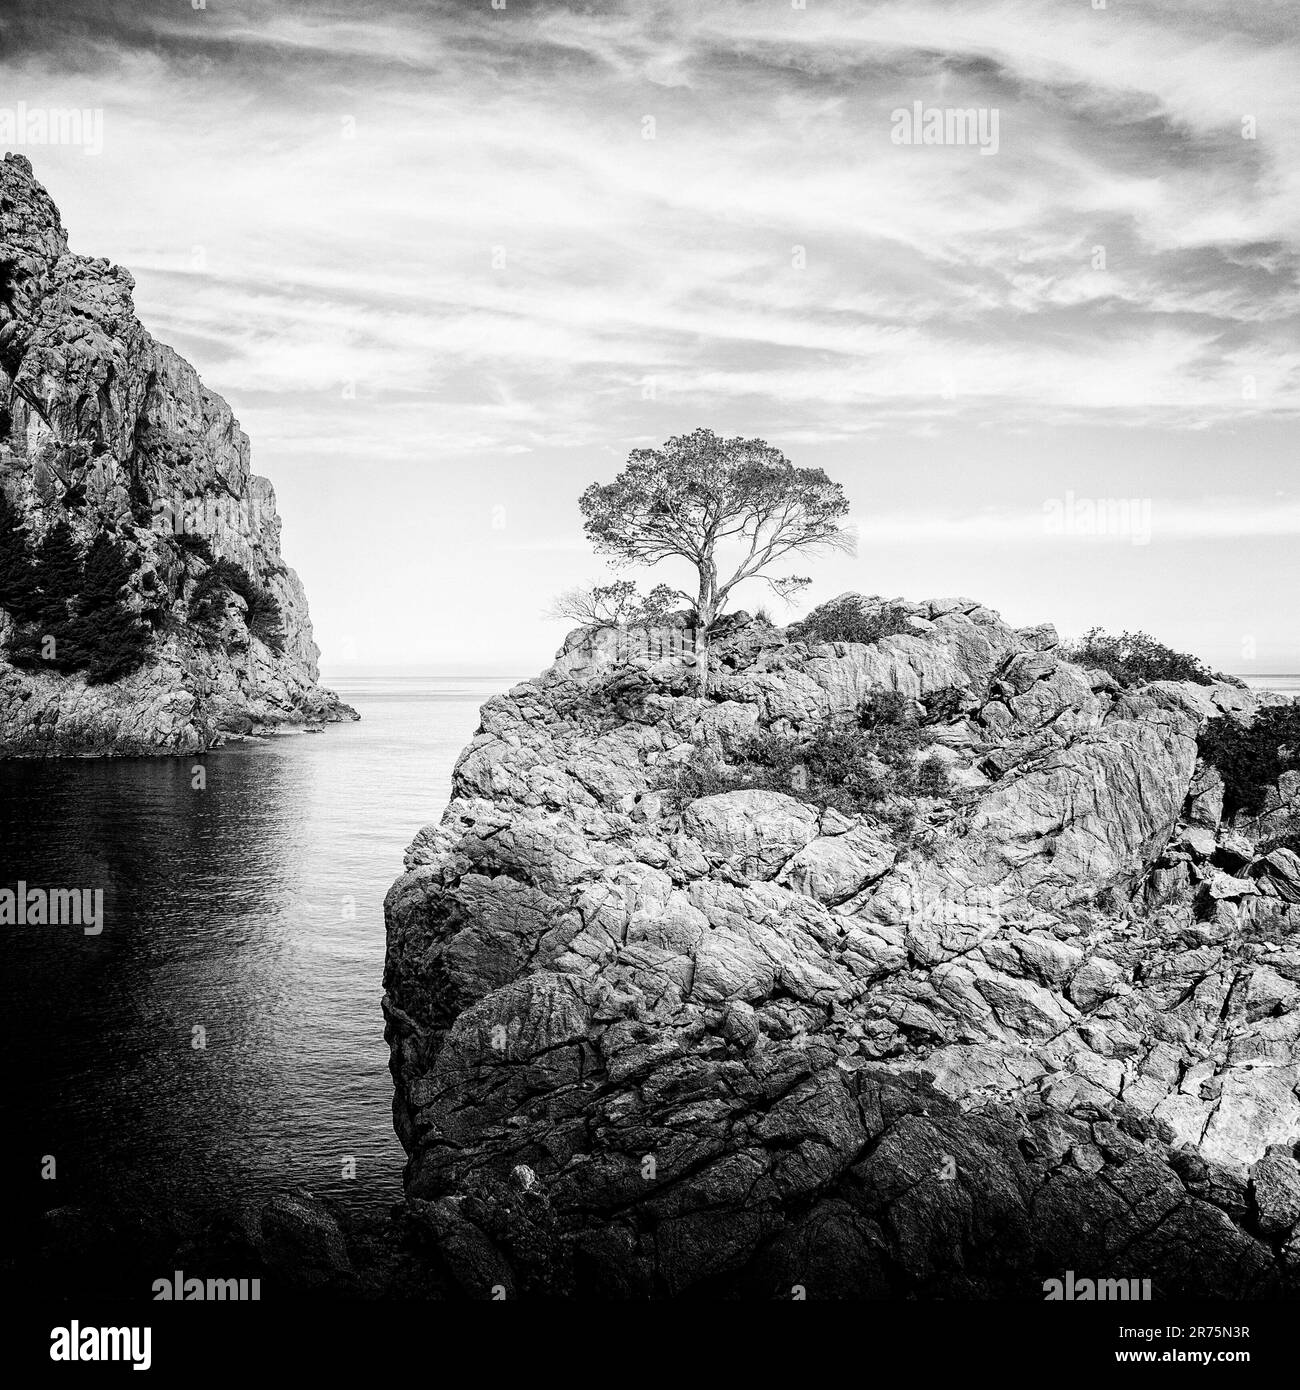 Albero unico su una roccia prominente nella baia di fronte a SA Calobra a Maiorca Foto Stock